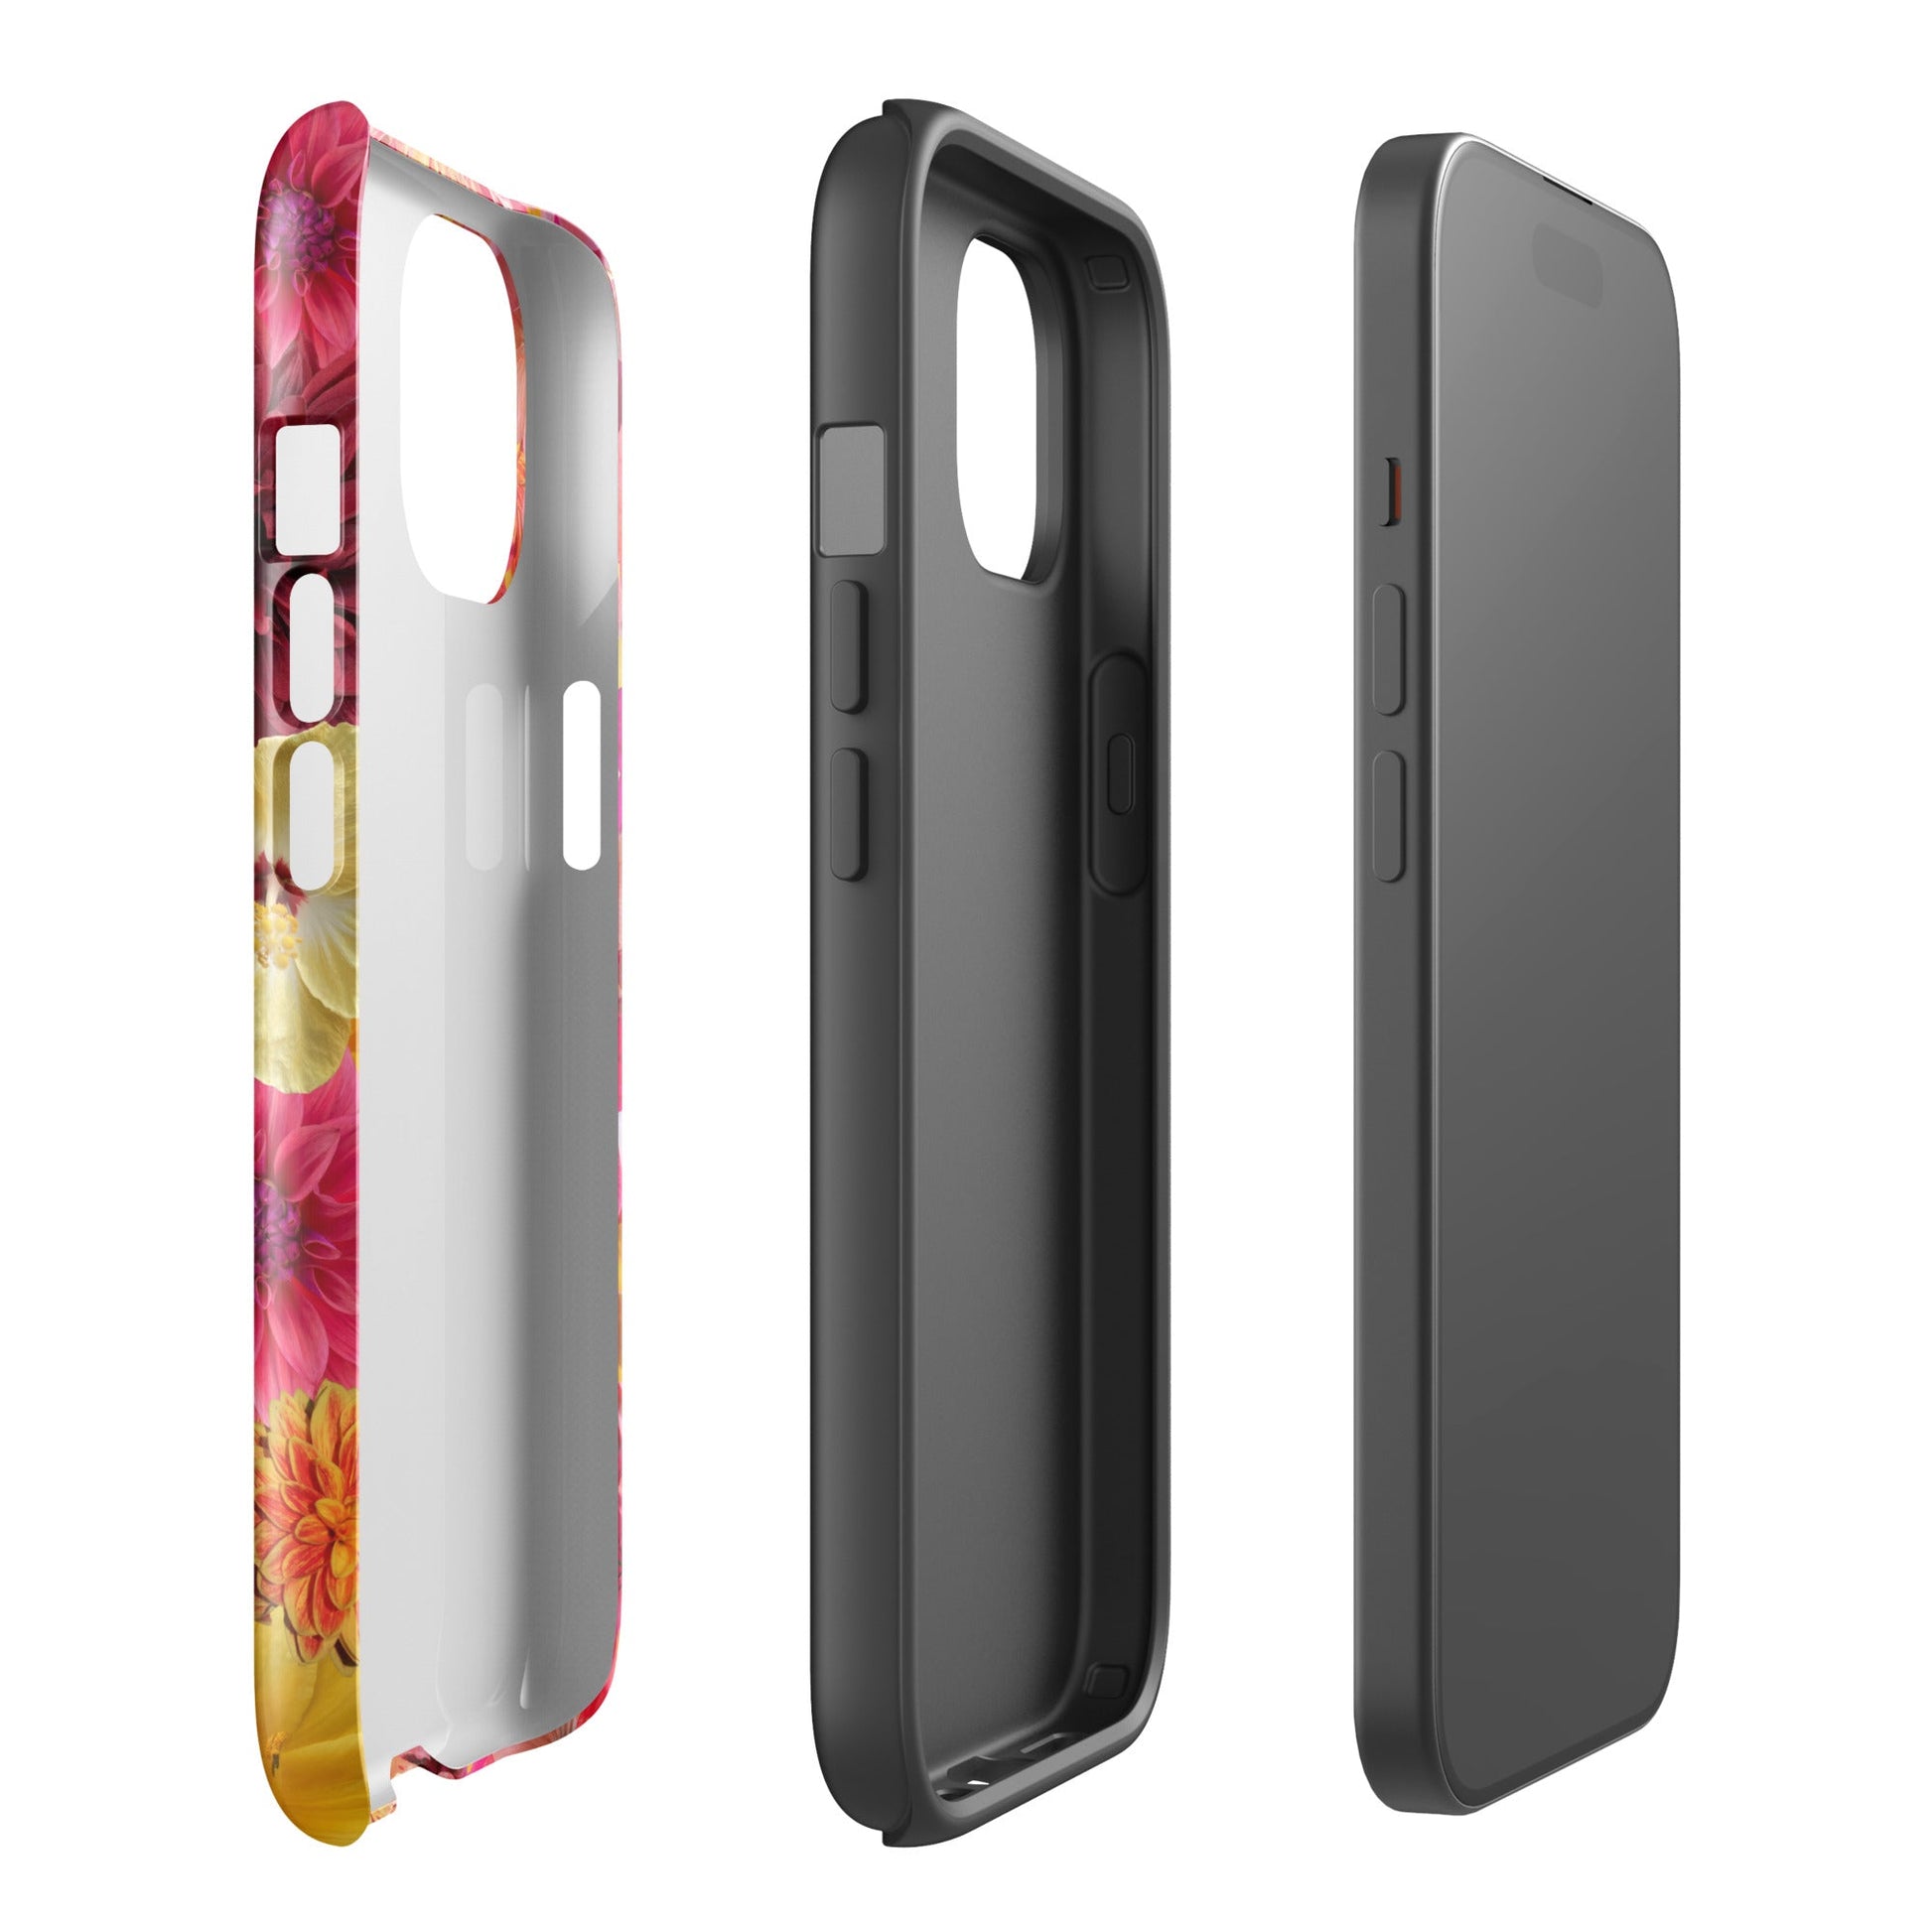 Sunset iPhone Case - blunt cases